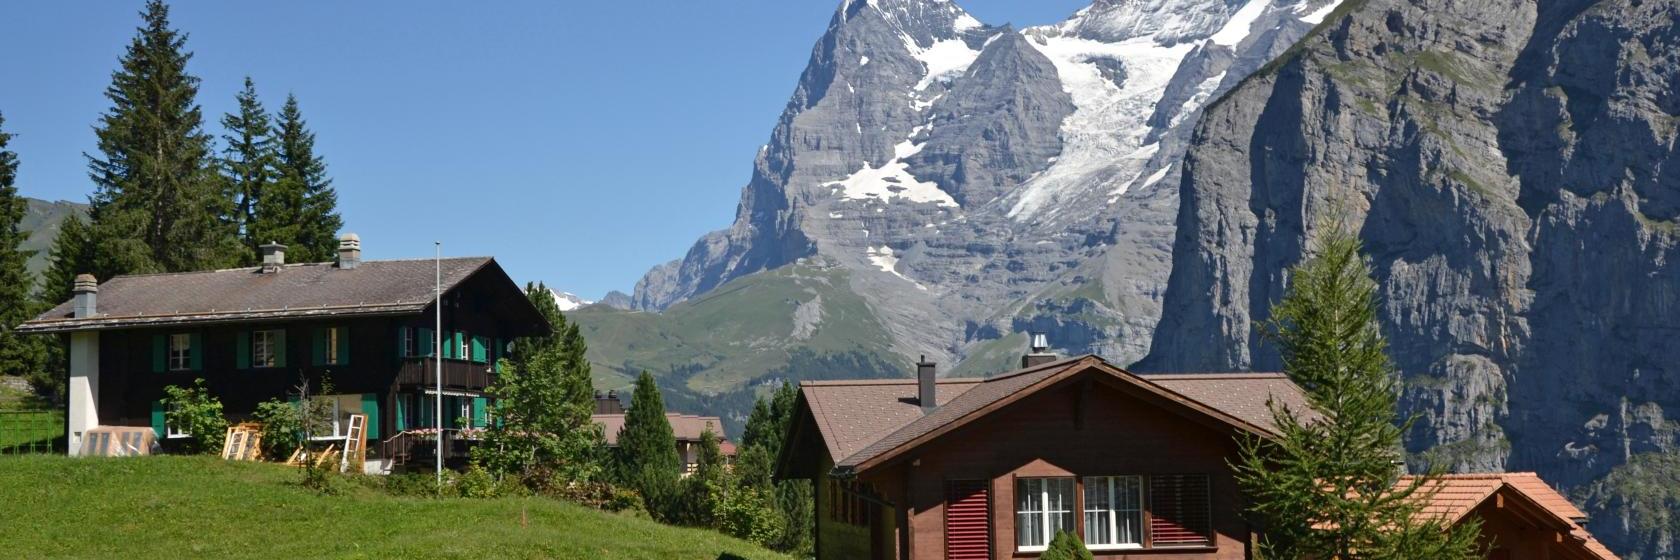 10 Best Mürren Hotels, Switzerland (From $102)